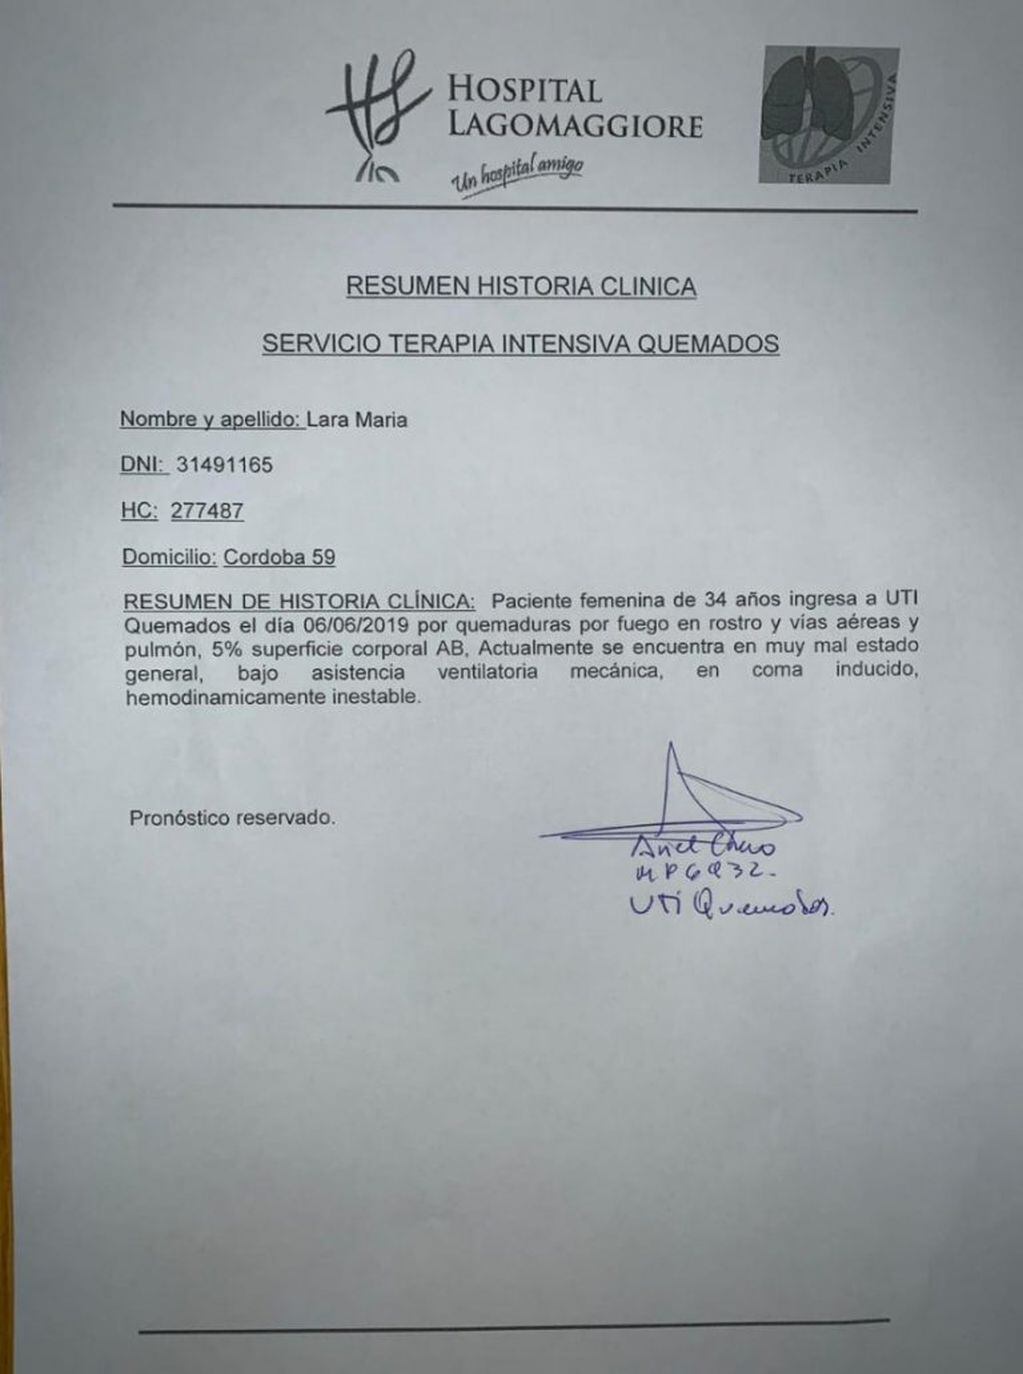 El informe del estado de salud de Maria Lara.